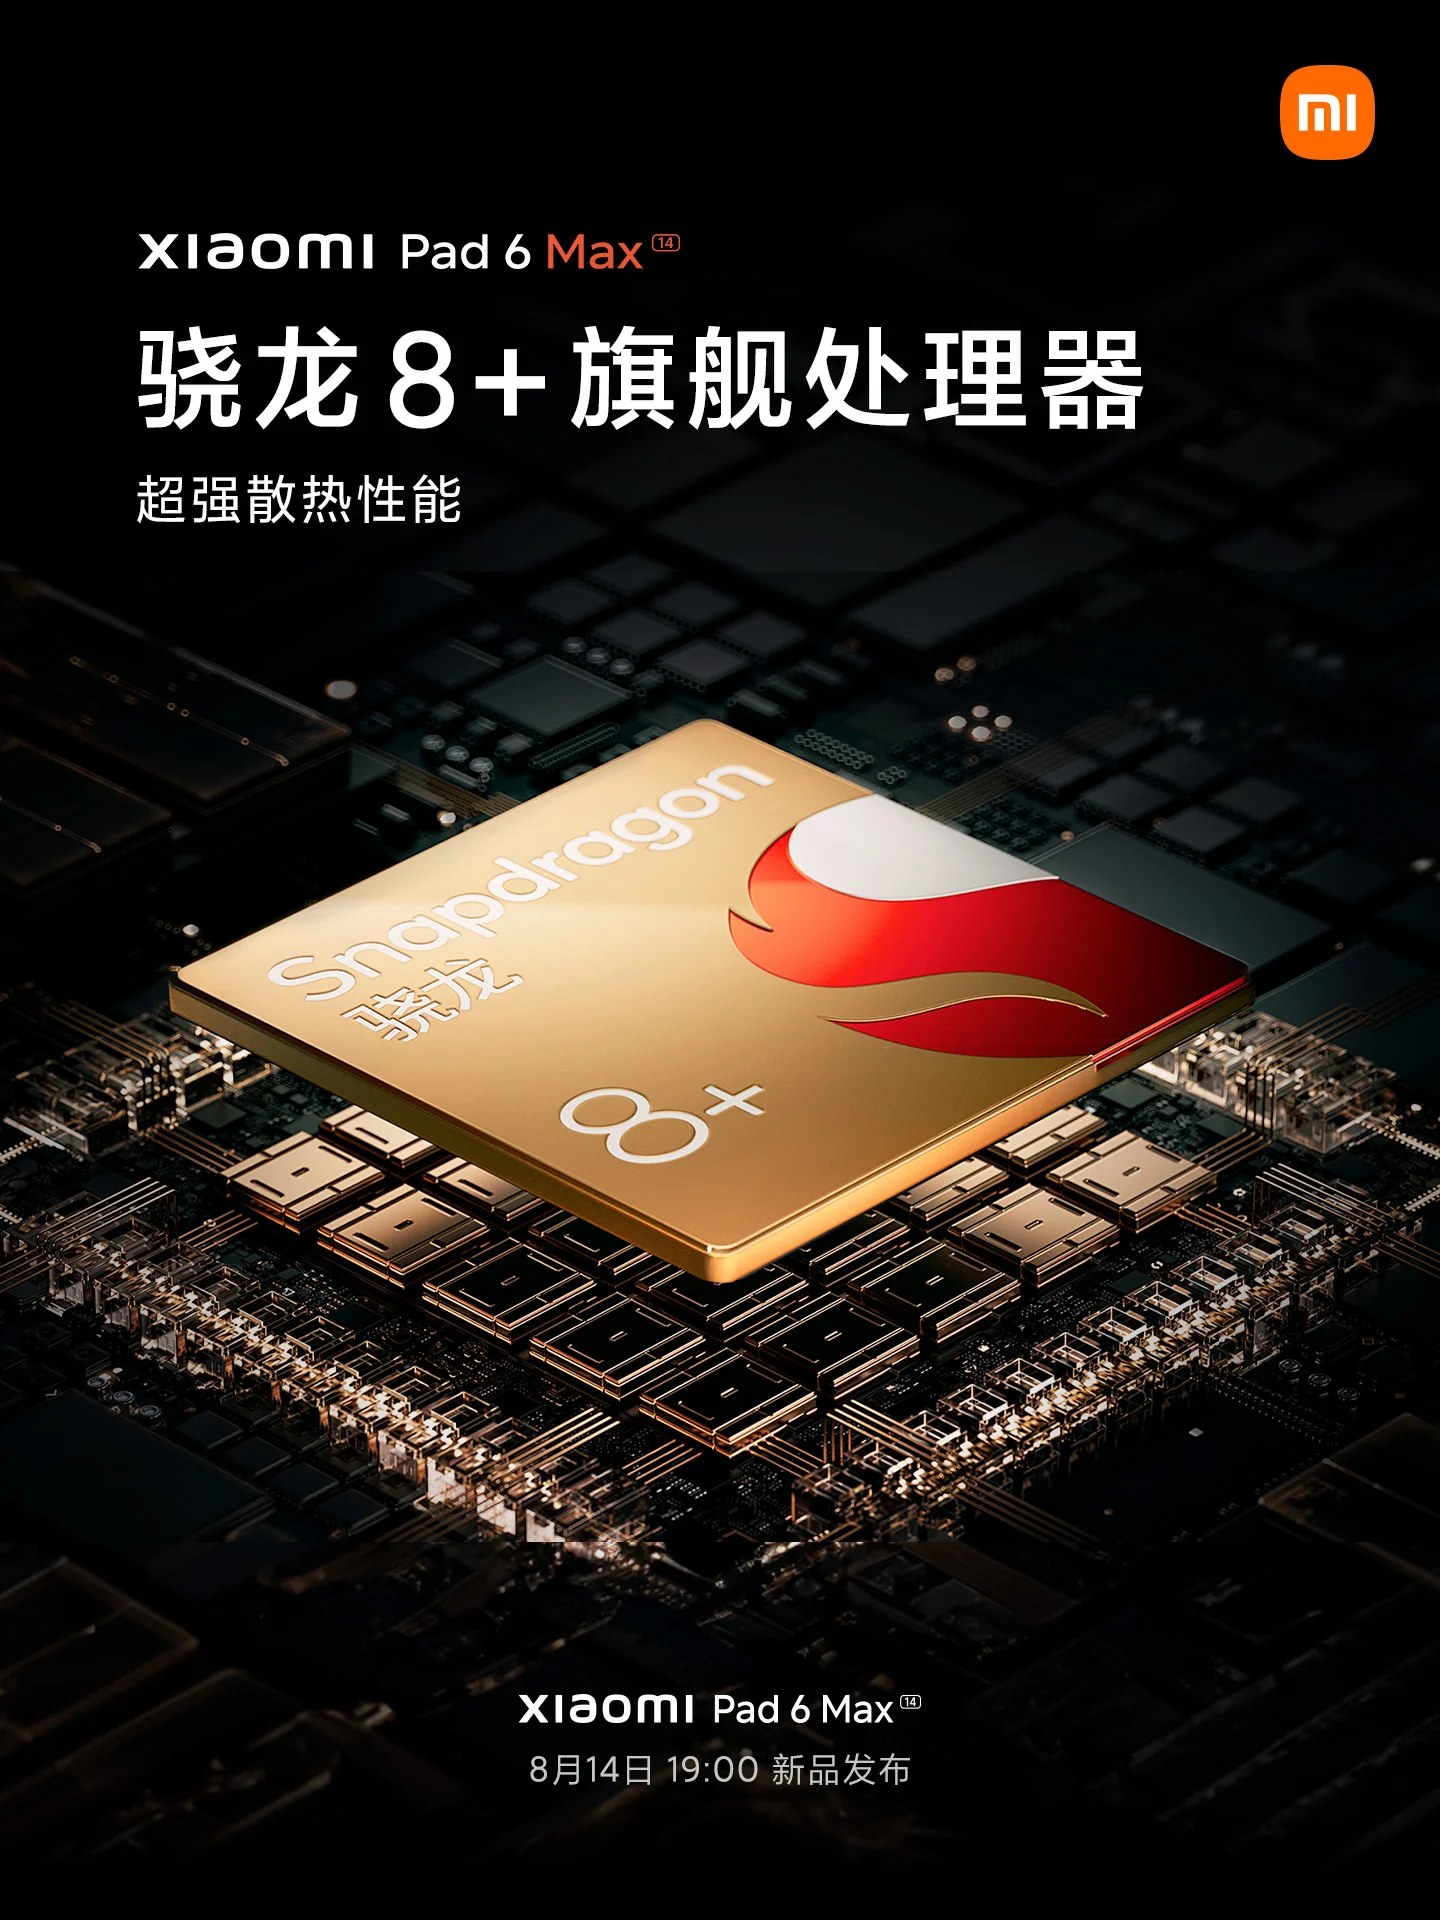 Размер дисплея Xiaomi Pad 6 Max, чипсет, аккумулятор и другие подробности подтверждены официально